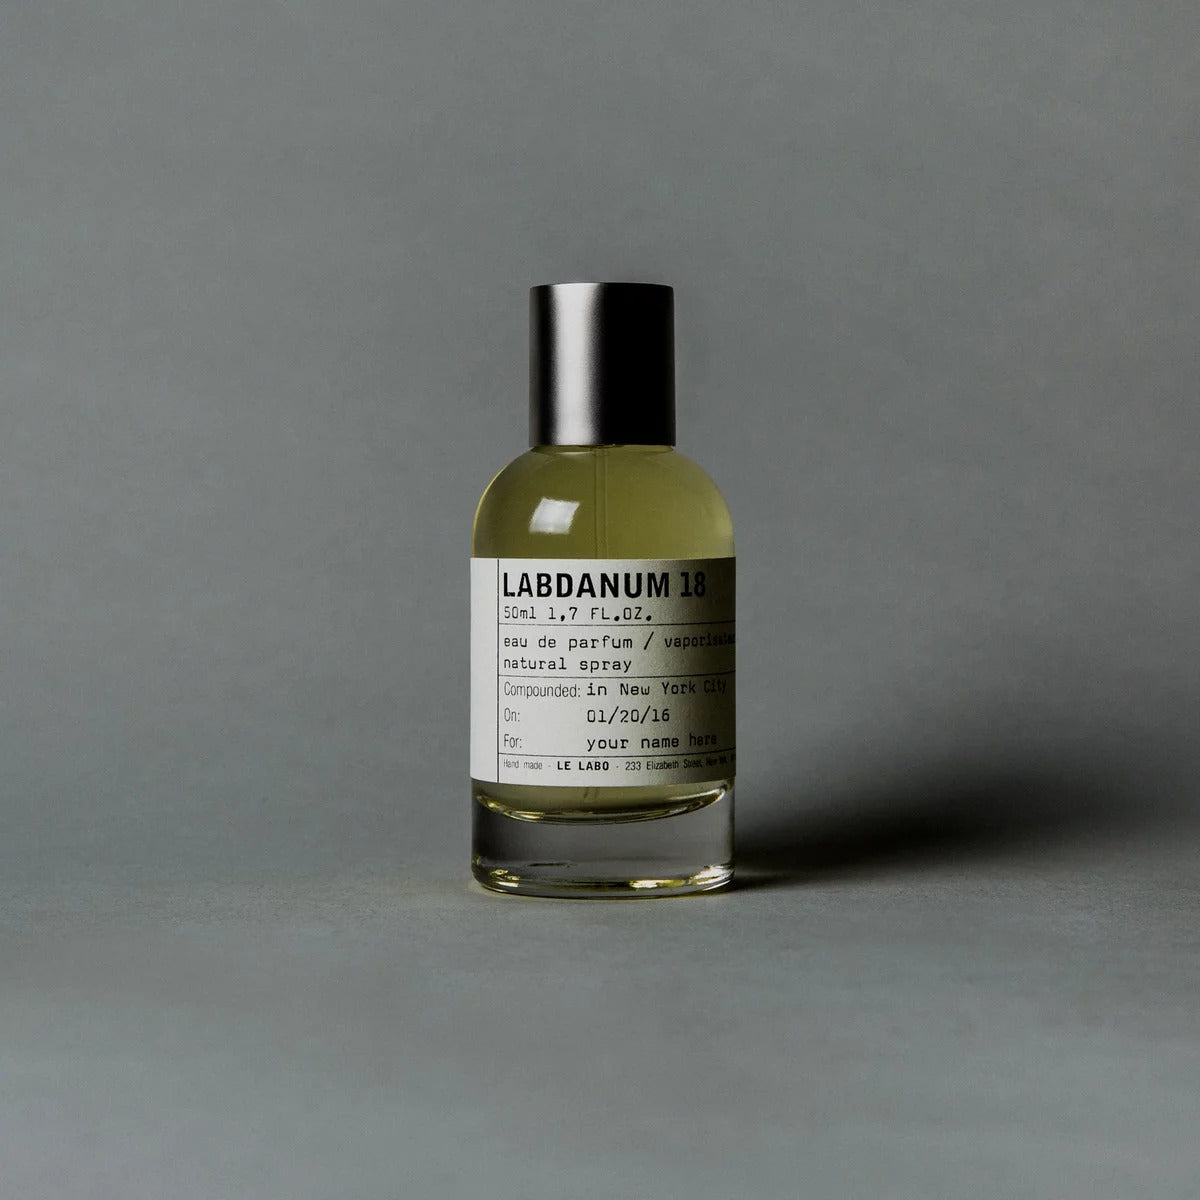 Le Labo Labdanum 18 - Maison de Parfum Albania